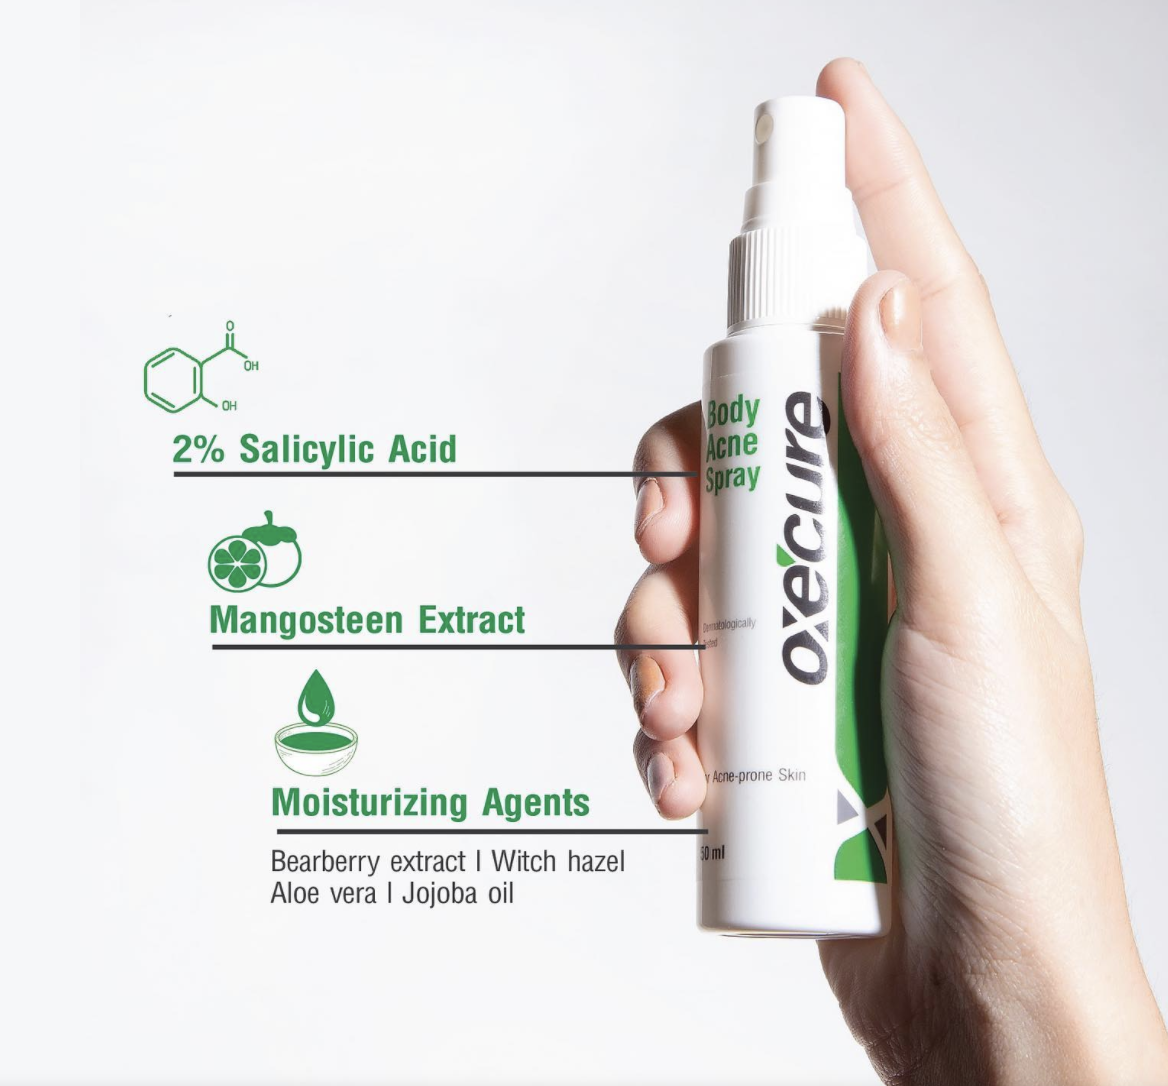 ภาพประกอบคำอธิบาย ขวดใหญ่ Oxe Cure Body Acne Spray (อ๊อกซีเคียว) 50ml oxecure